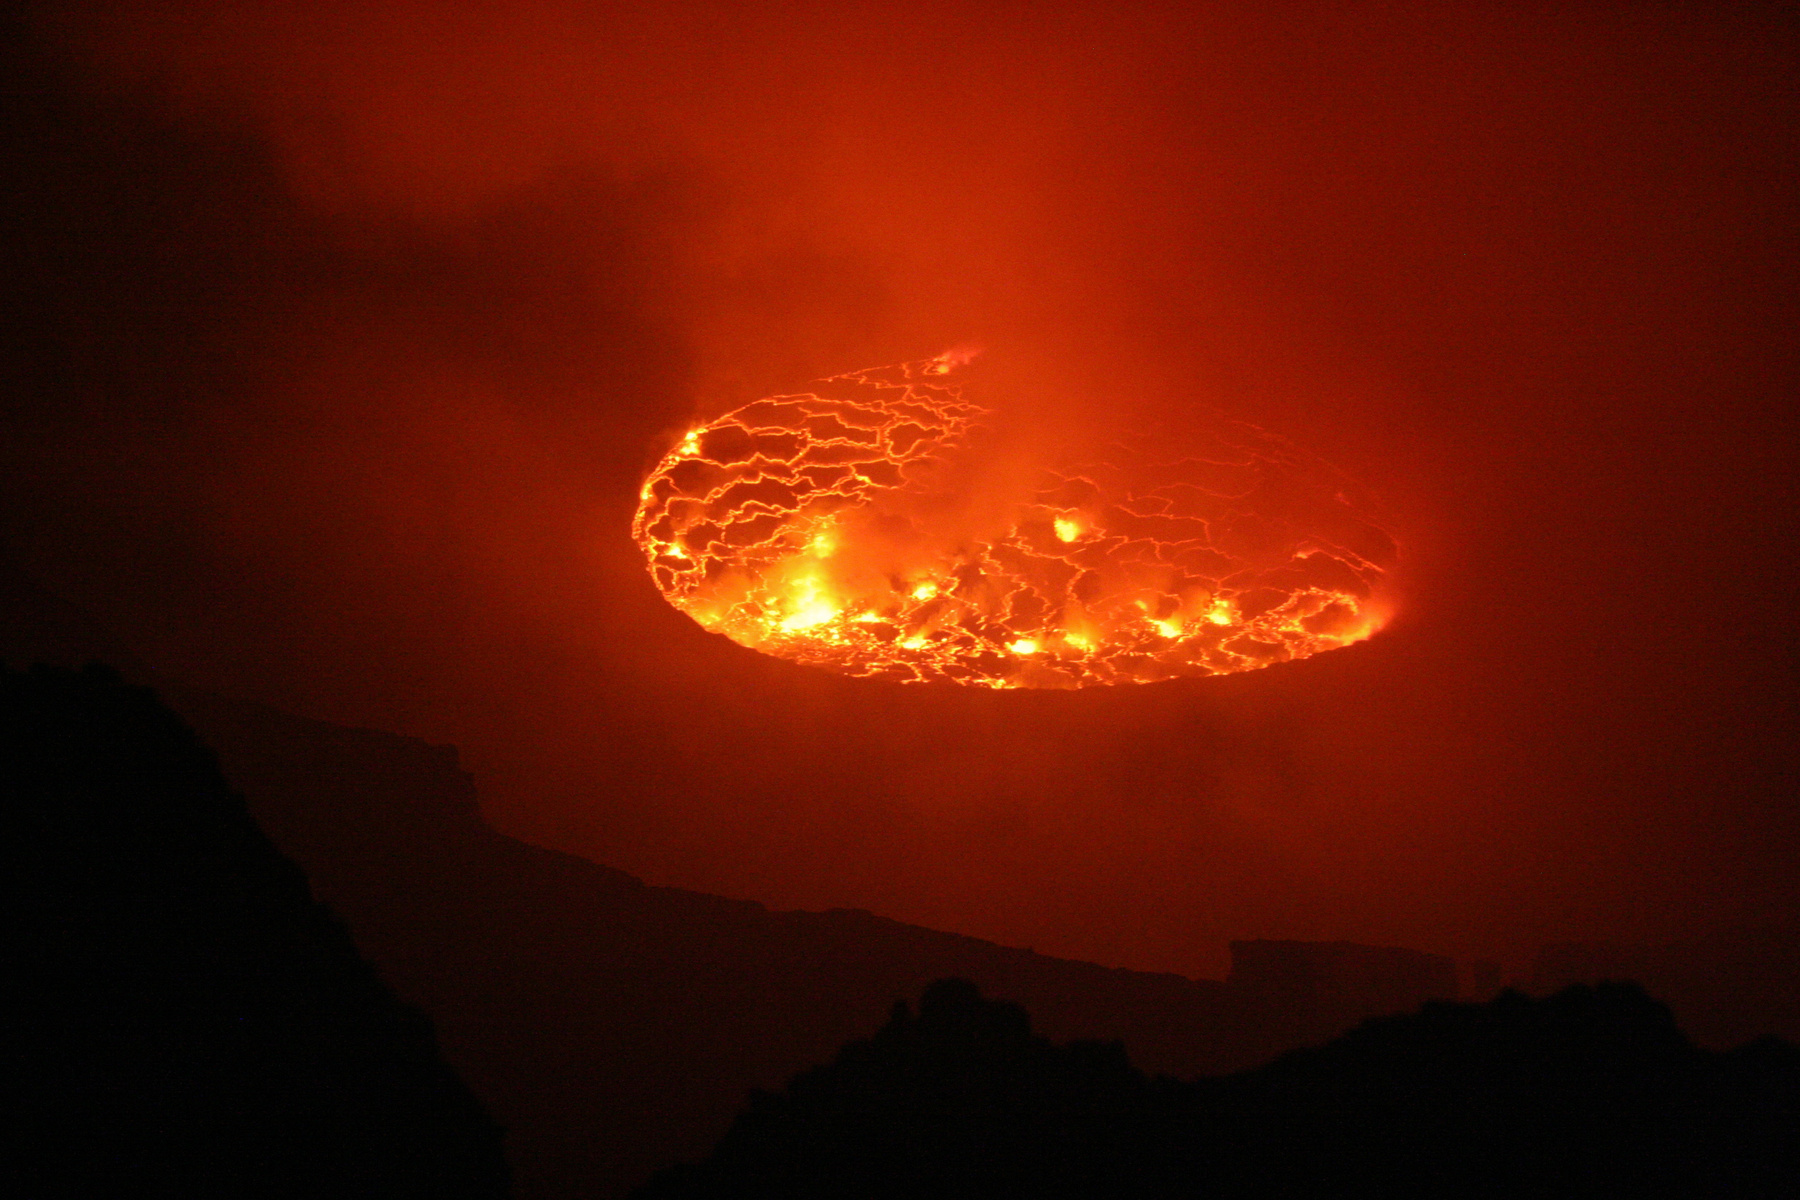 A kereszt a vulkán tetején az elmúlt évtizedek kitöréseinek áldozataira emlékezteti az arrajárókat.